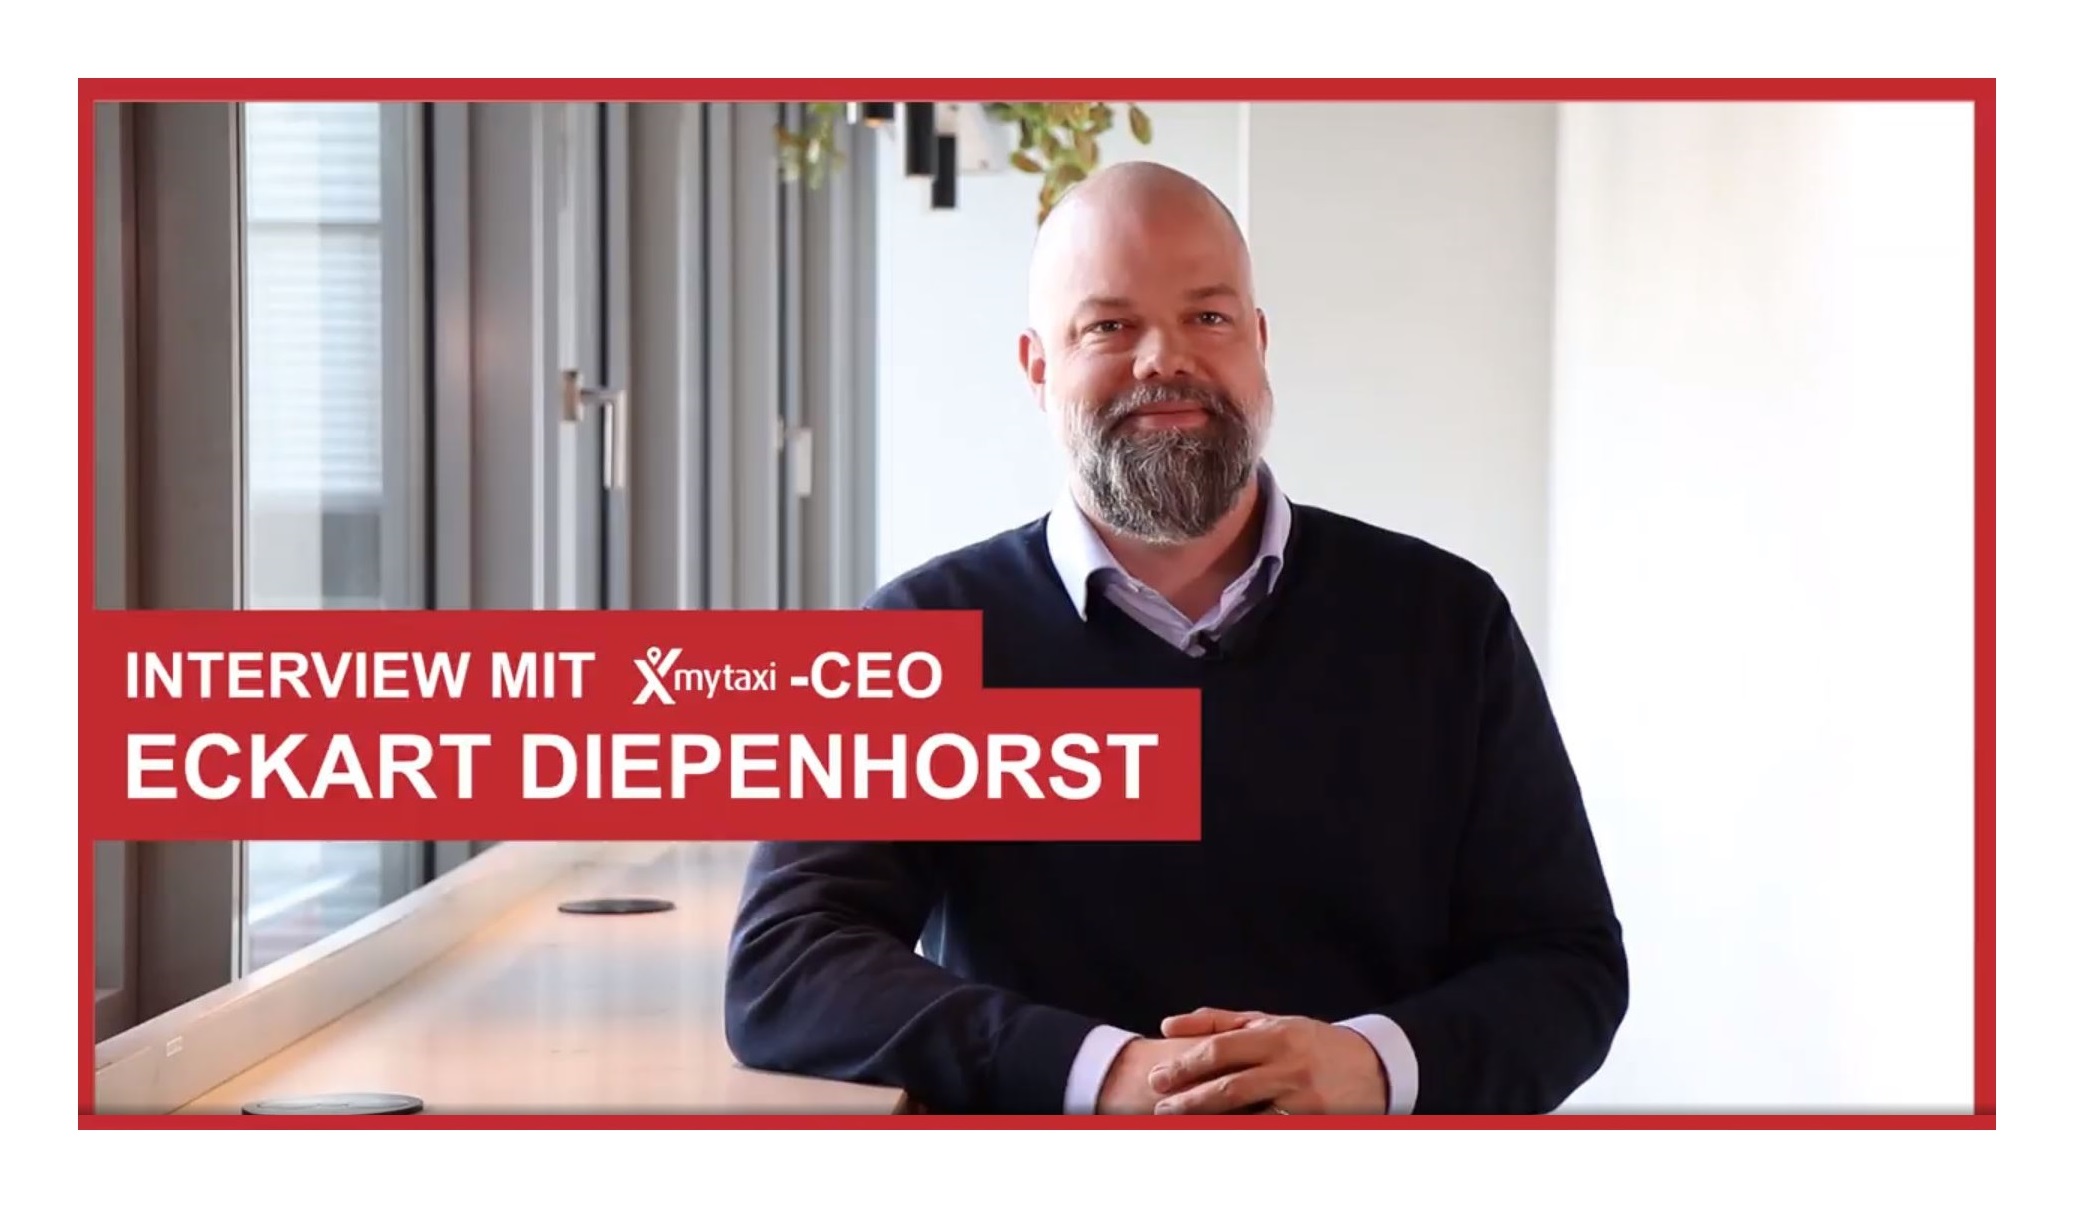 Interview with mytaxi CEO Eckart Diepenhorst